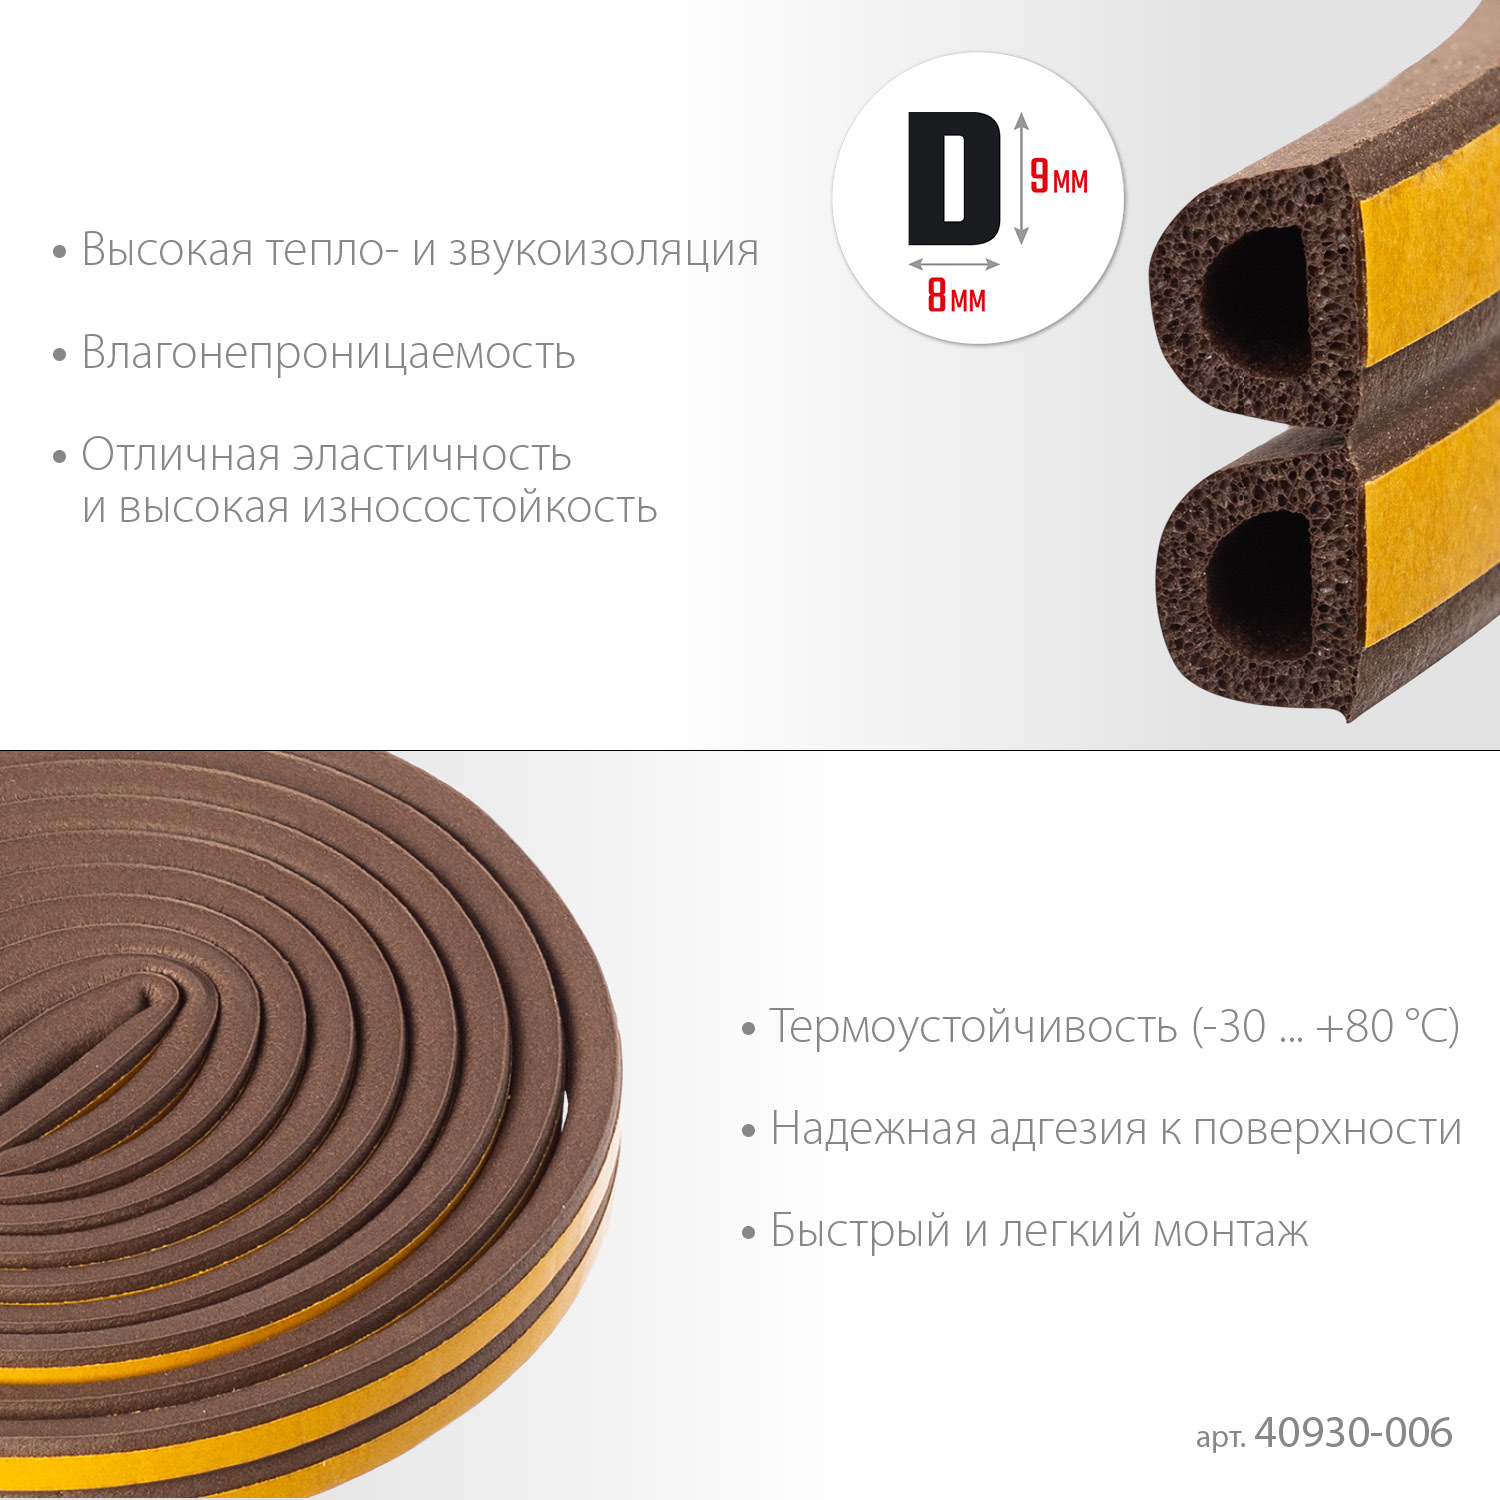 ЗУБР 6 м, D-профиль, размер 9 х 8 мм, коричневый, самоклеящийся резиновый уплотнитель, Профессионал (40930-006)